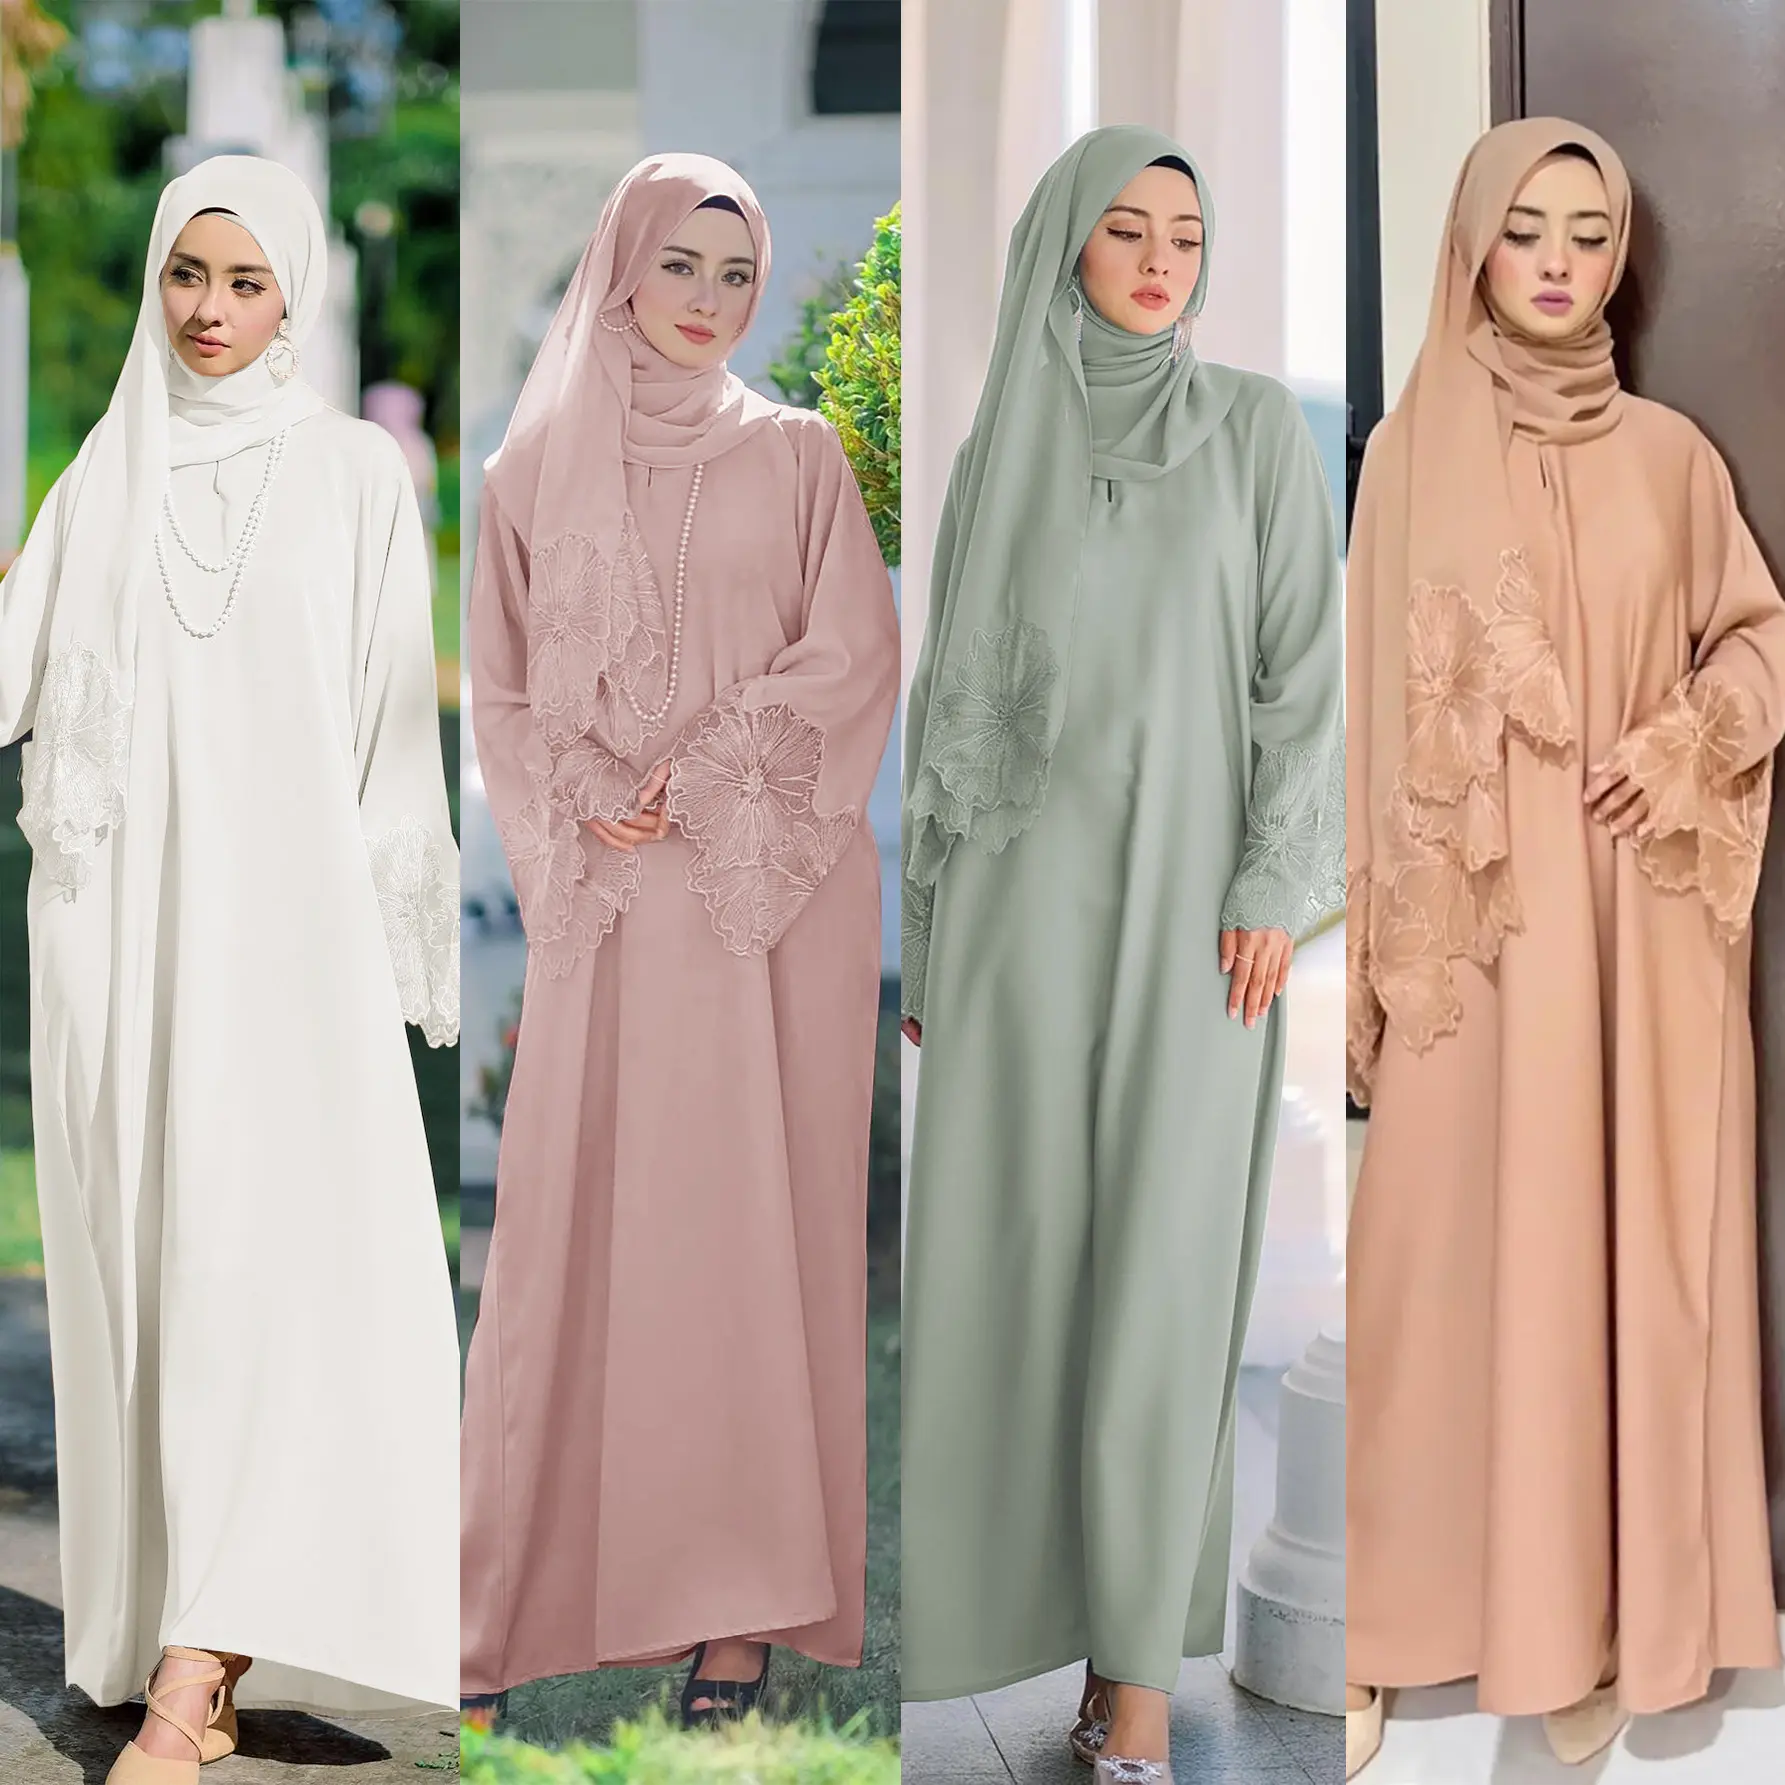 ชุดสตรีอิสลามห้าสี ชุดอาบายาสตรีมุสลิม มลาวย์ อินโดนีเซียพร้อมฮิญาบ